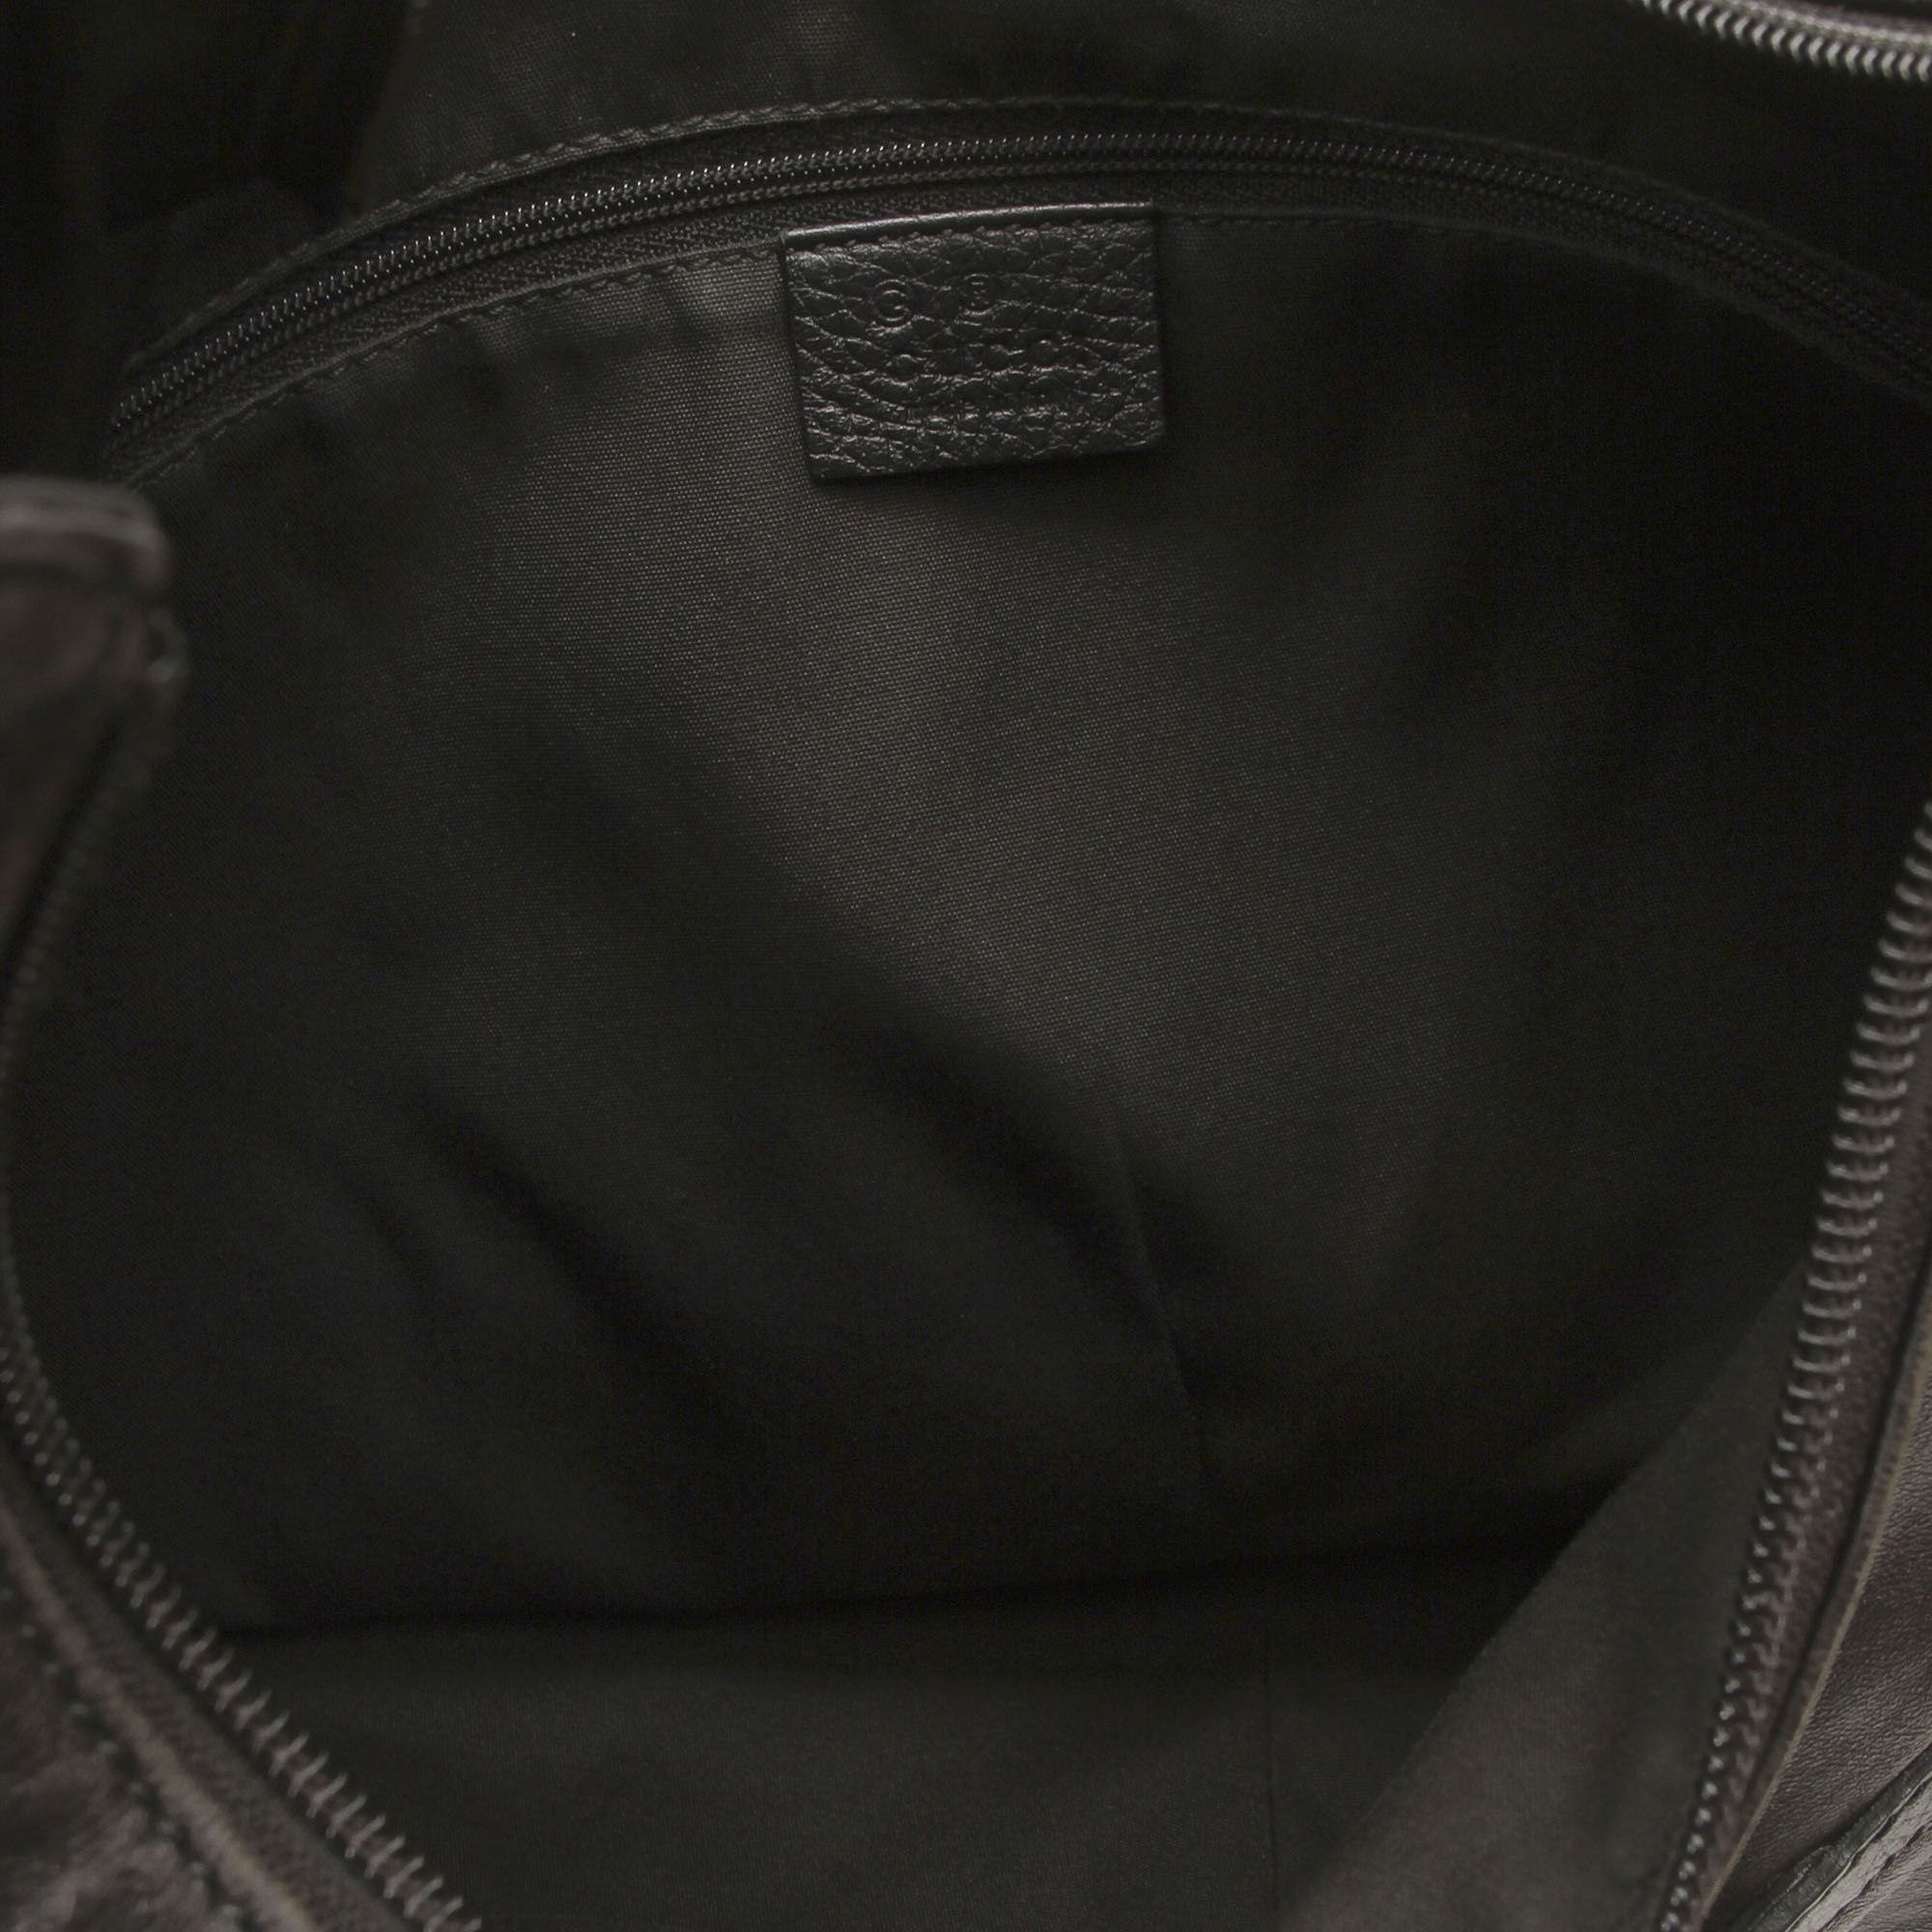 Vintage Gucci Reins Leather Hobo Bag Black